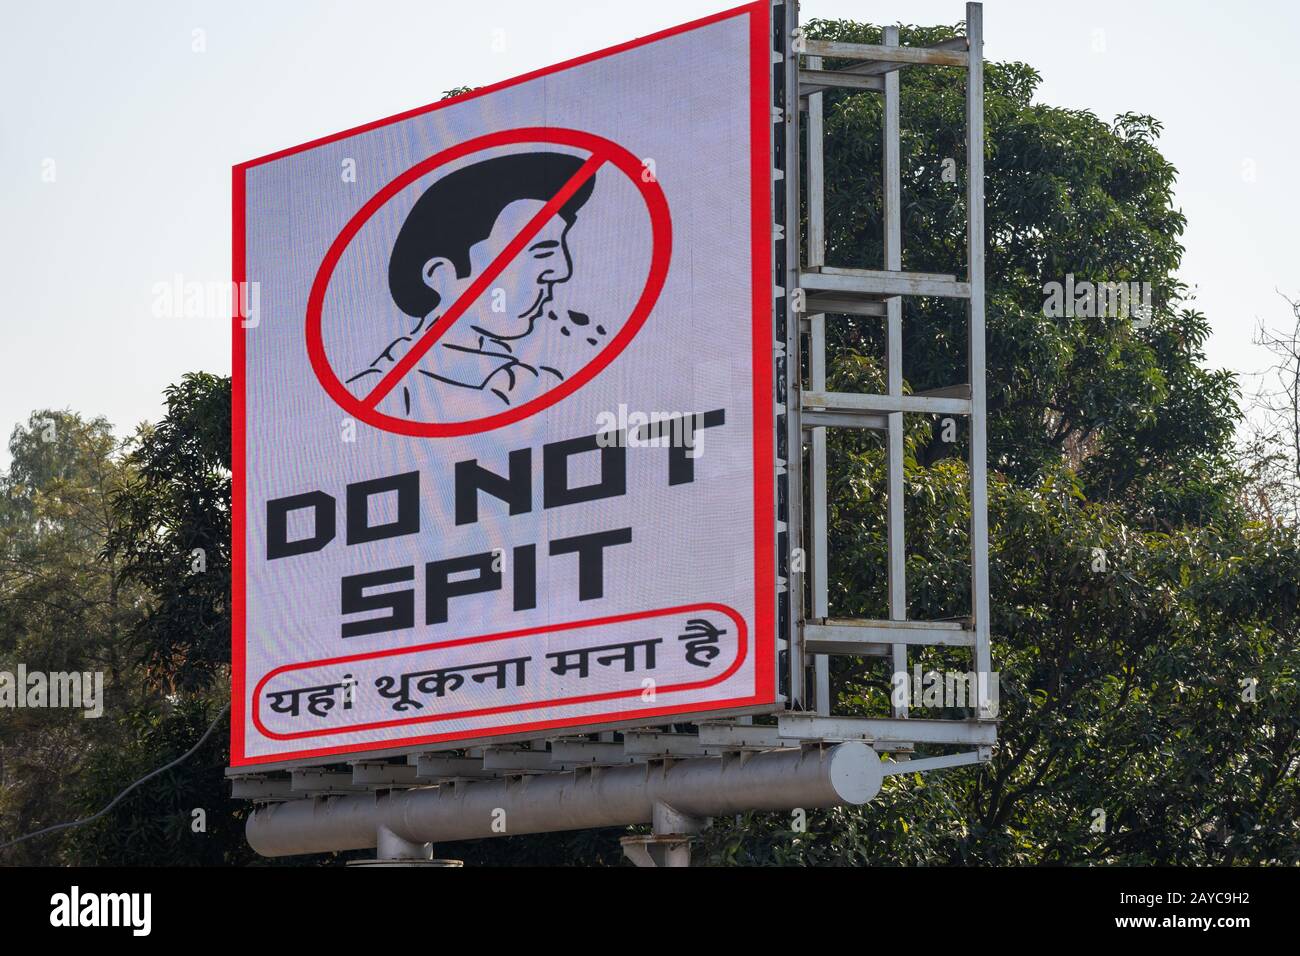 Attari, Inde - Feubuary 8, 2020: Inscrivez-vous pour rappeler aux touristes de ne pas faire de cracher dans le stade (Ne pas cracher) à la cérémonie de clôture de la frontière de Wagah avec P Banque D'Images